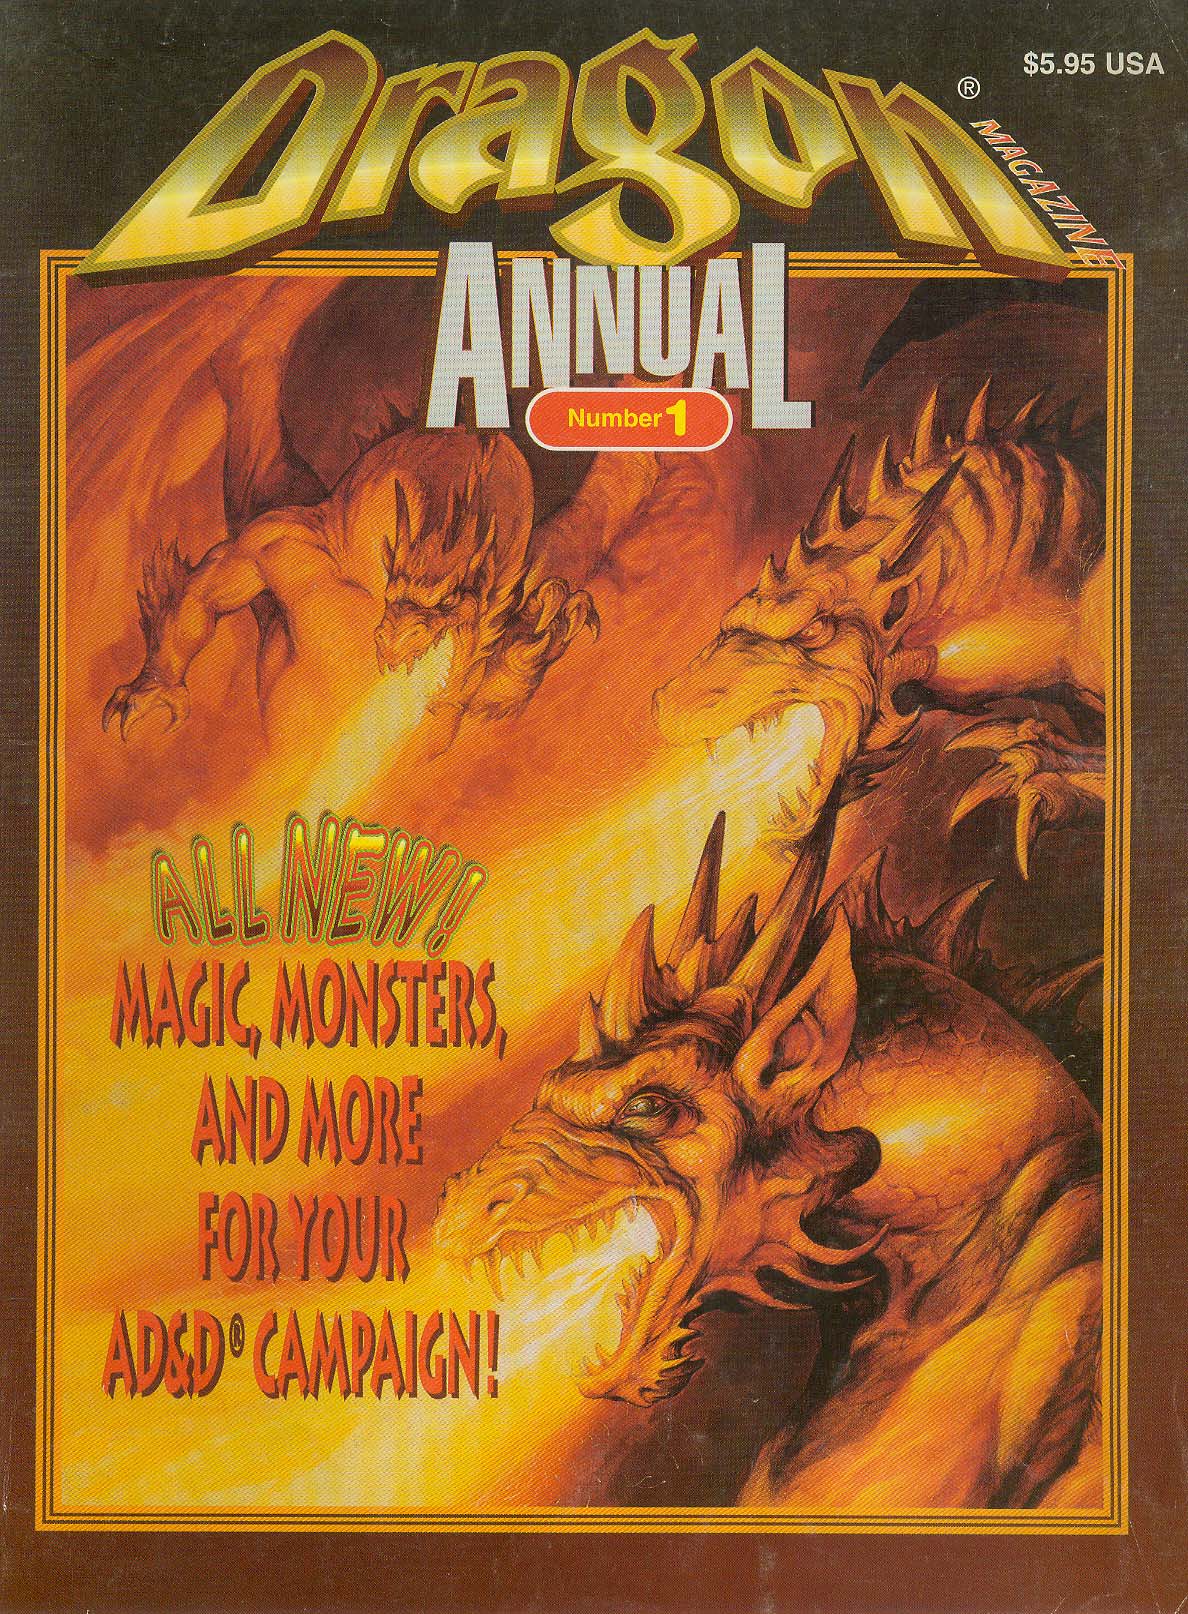 Dragon Magazine Annual 1996Cover art